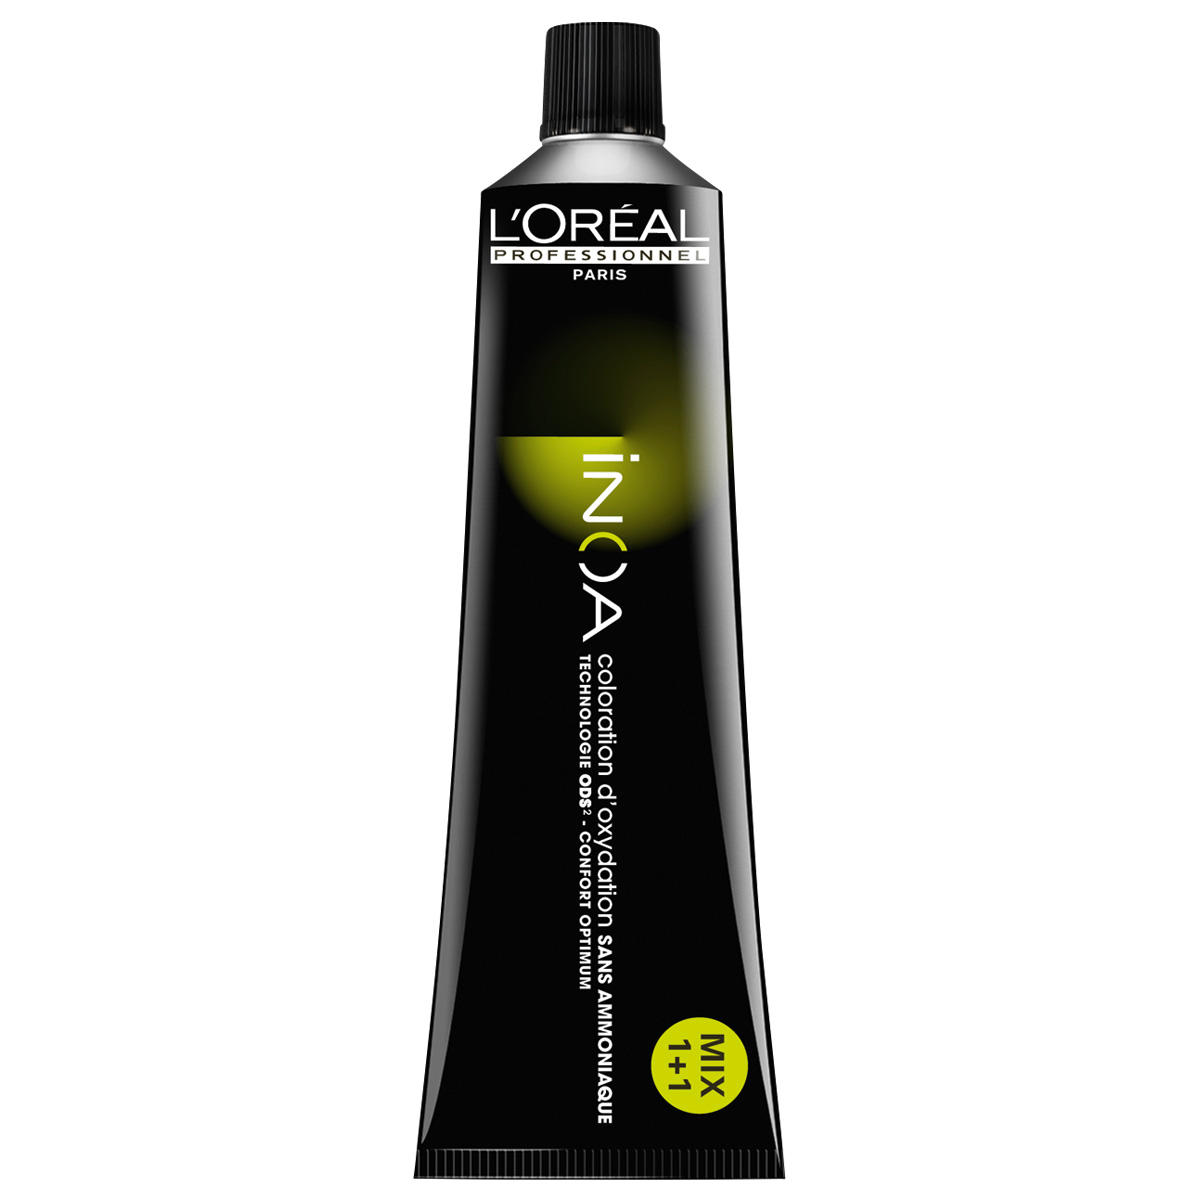 L'Oréal Professionnel Paris Coloration 6.45 Donker Blond Koper Mahonie, Tube 60 ml - 1